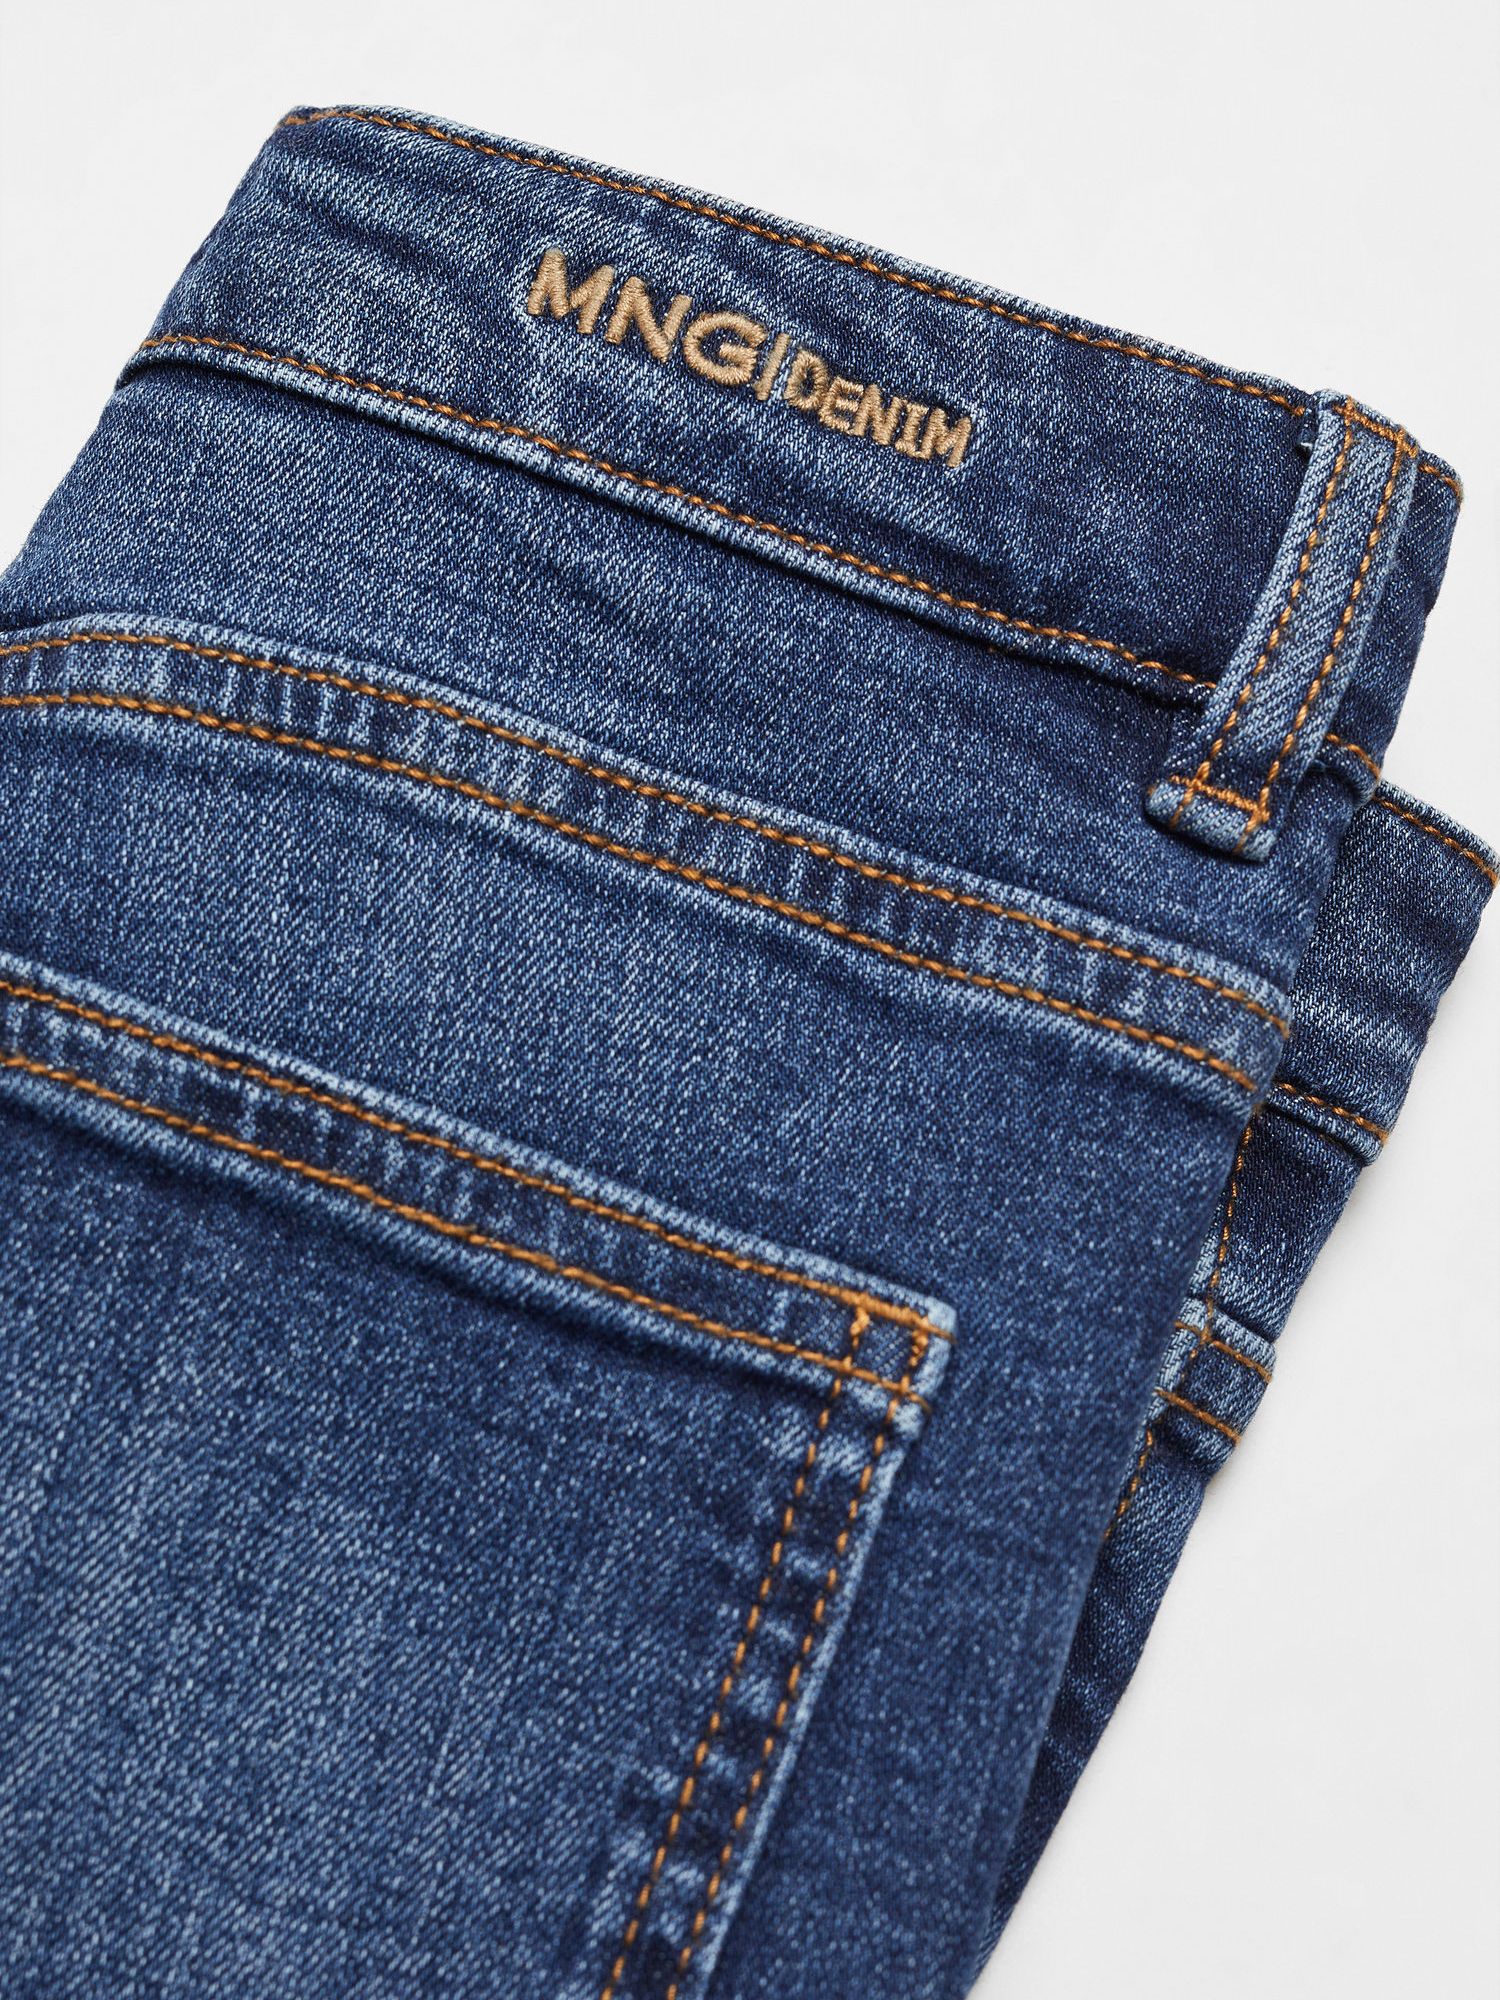 Mango Kids' Slim Fit Jeans, Open Blue, 6 years